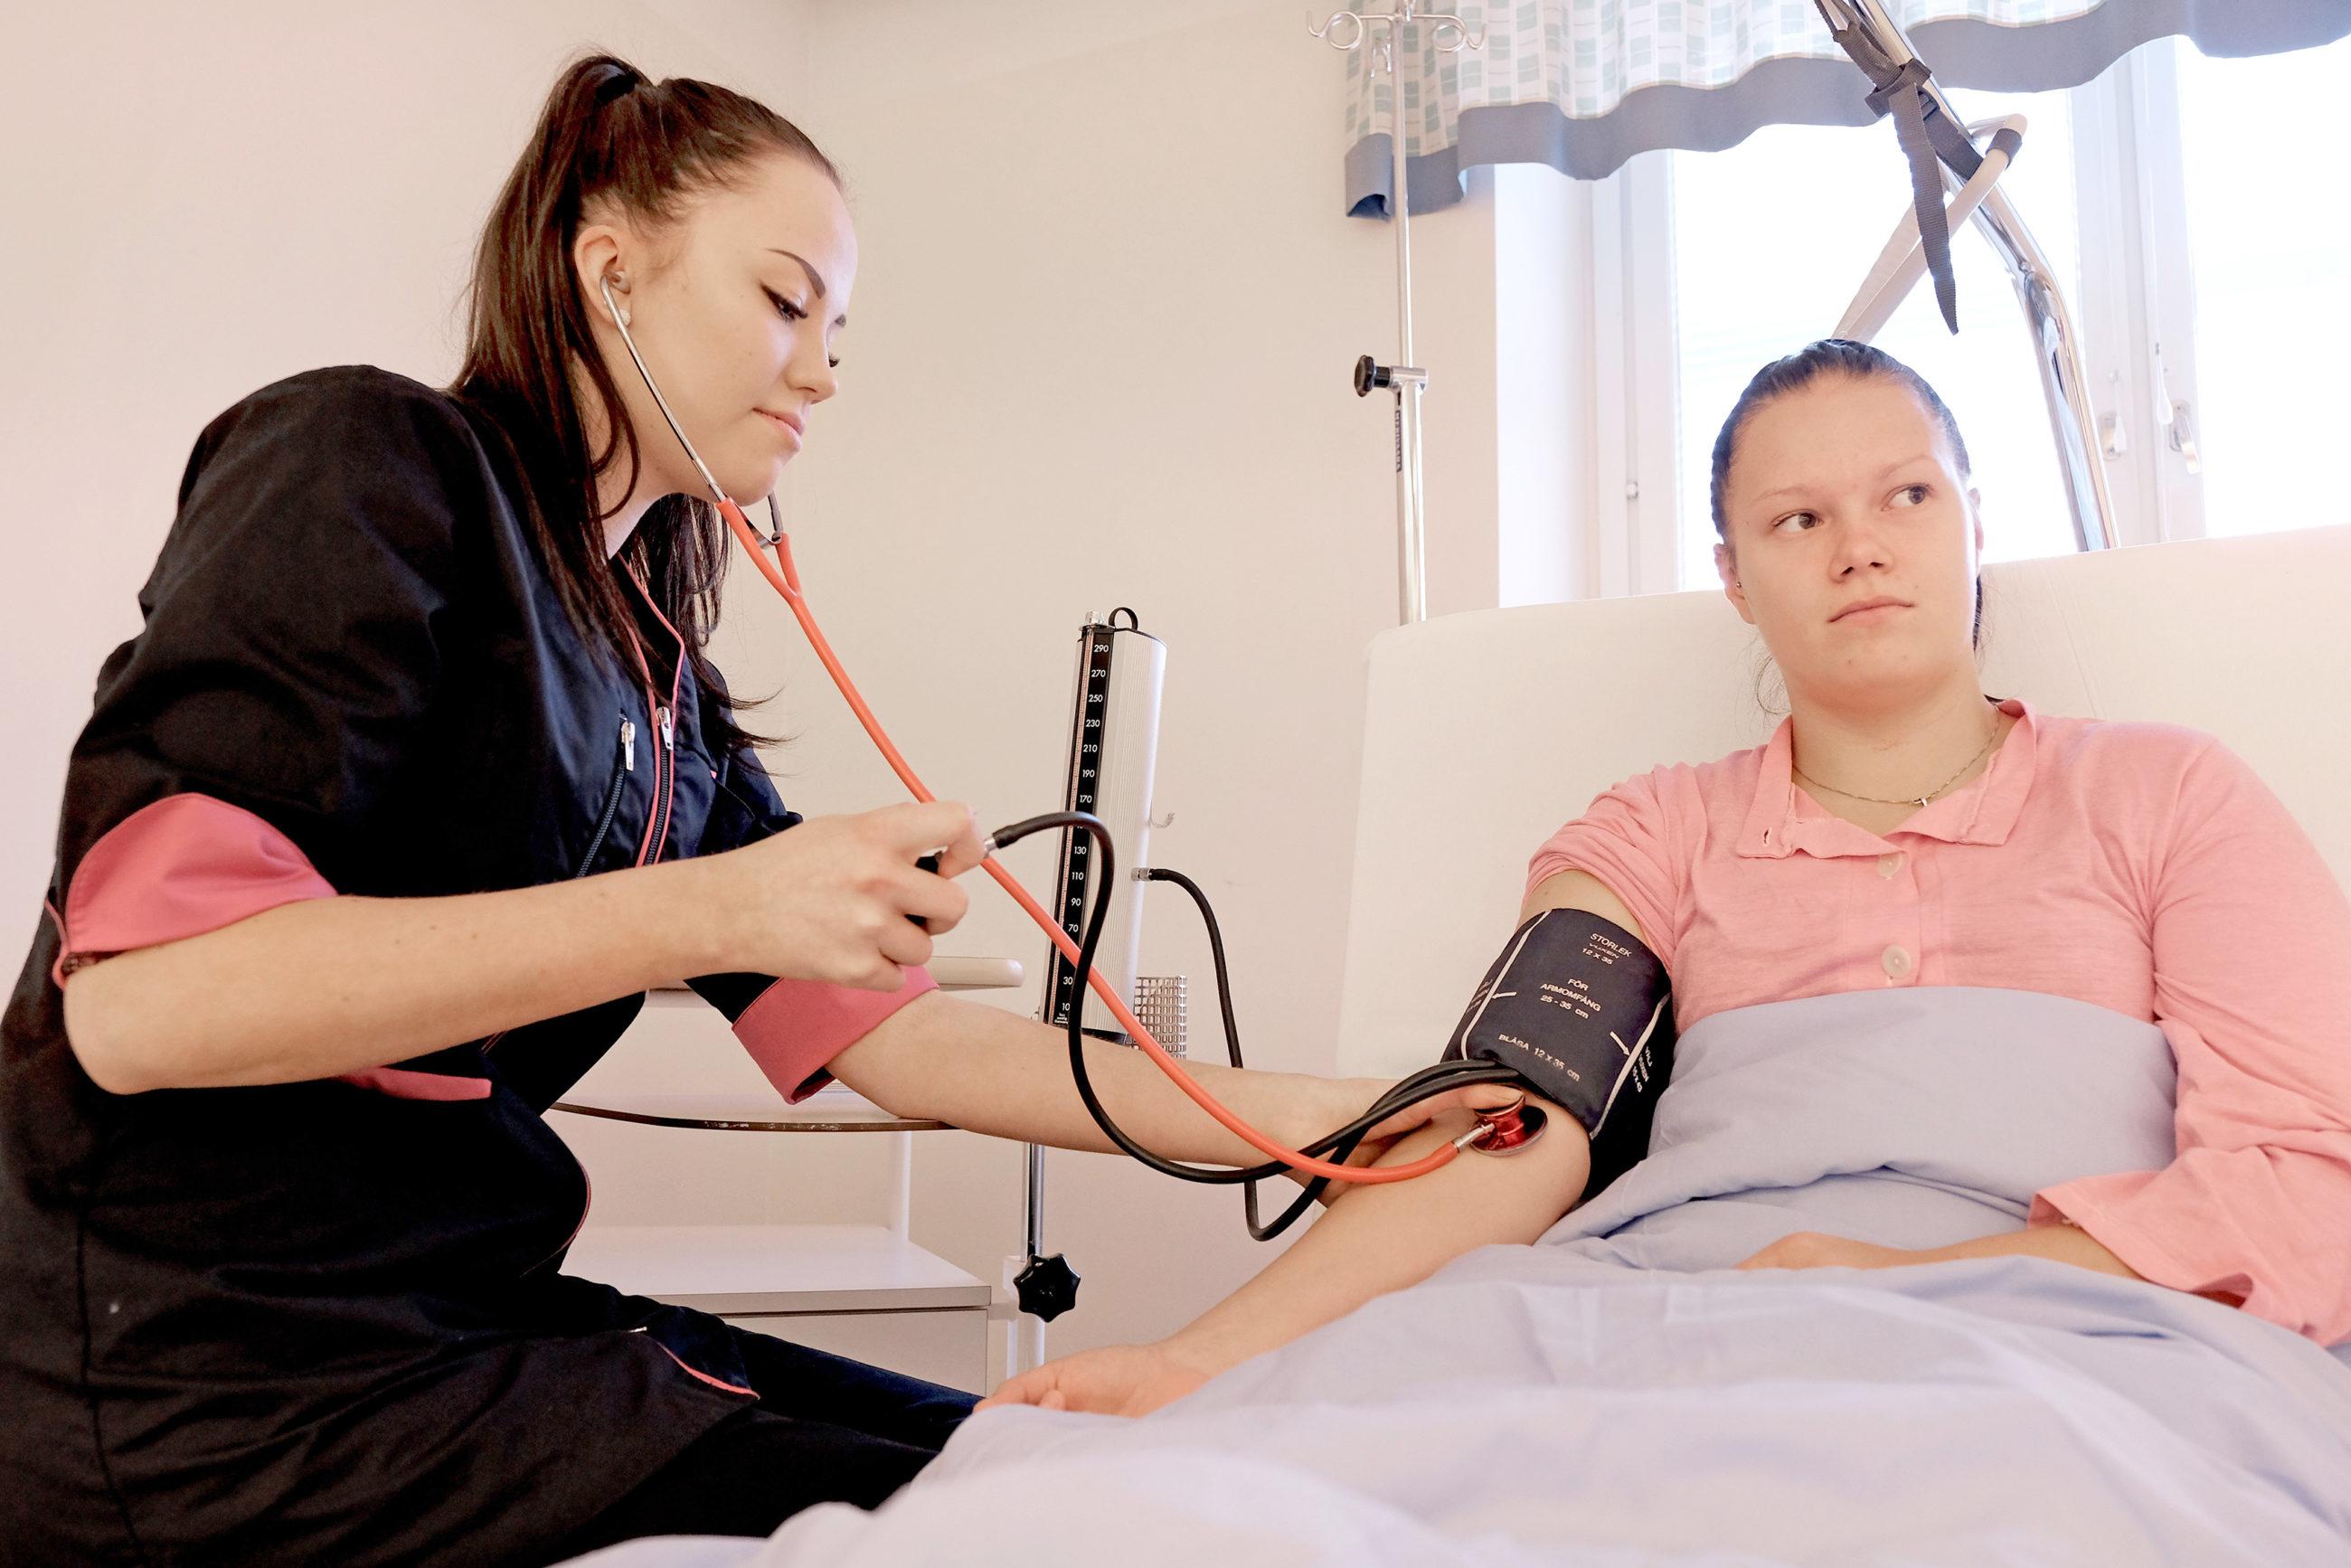 Henkilö mittaa verenpainetta toiselta henkilöltä, joka on sairaalasängyssä.